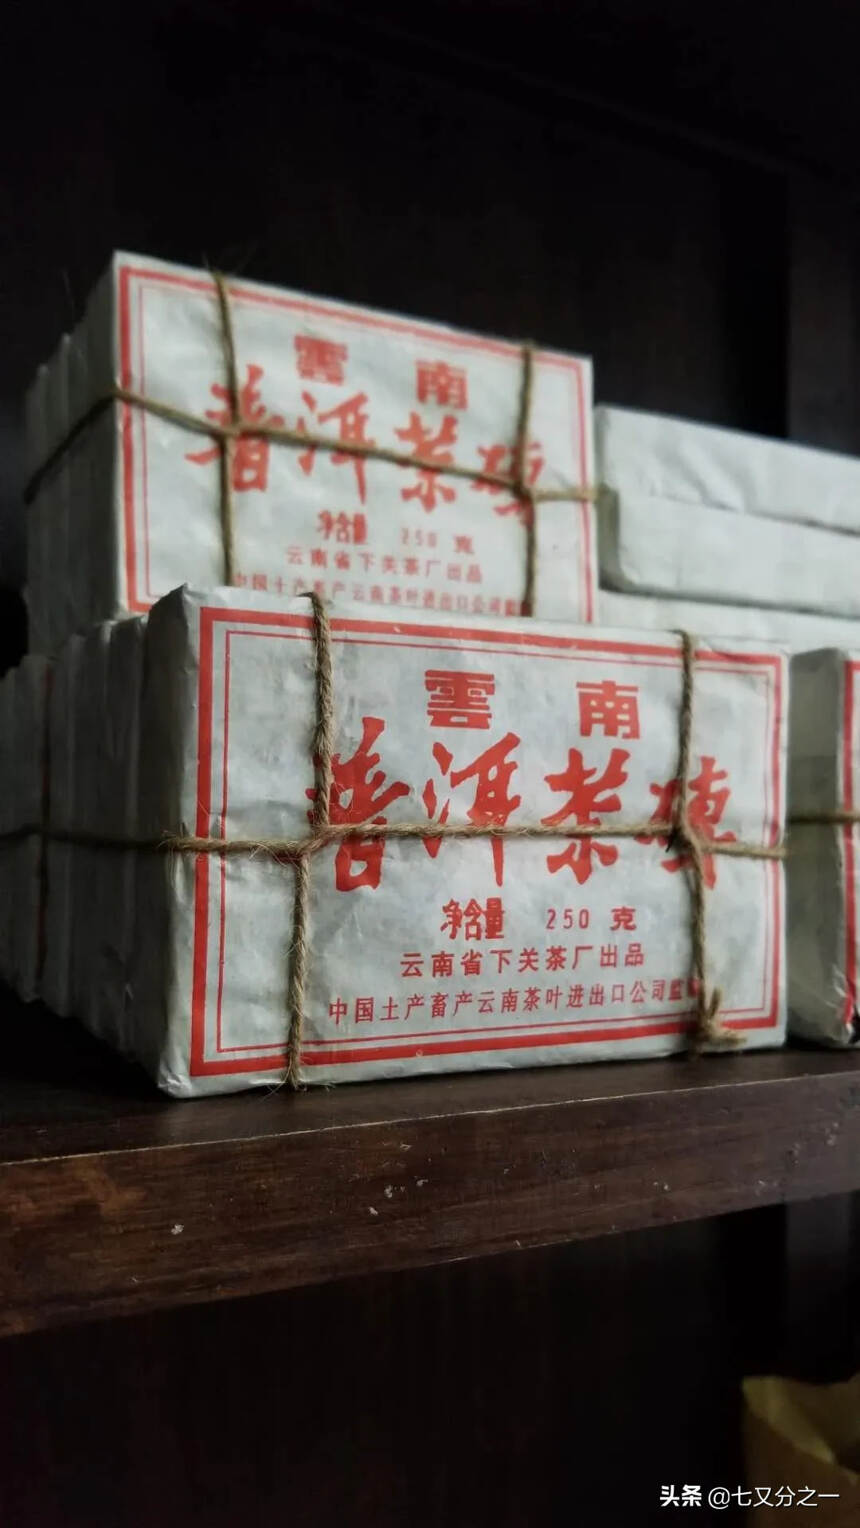 经典款好茶
98年云南下关茶厂出品 口感细腻柔软 甜